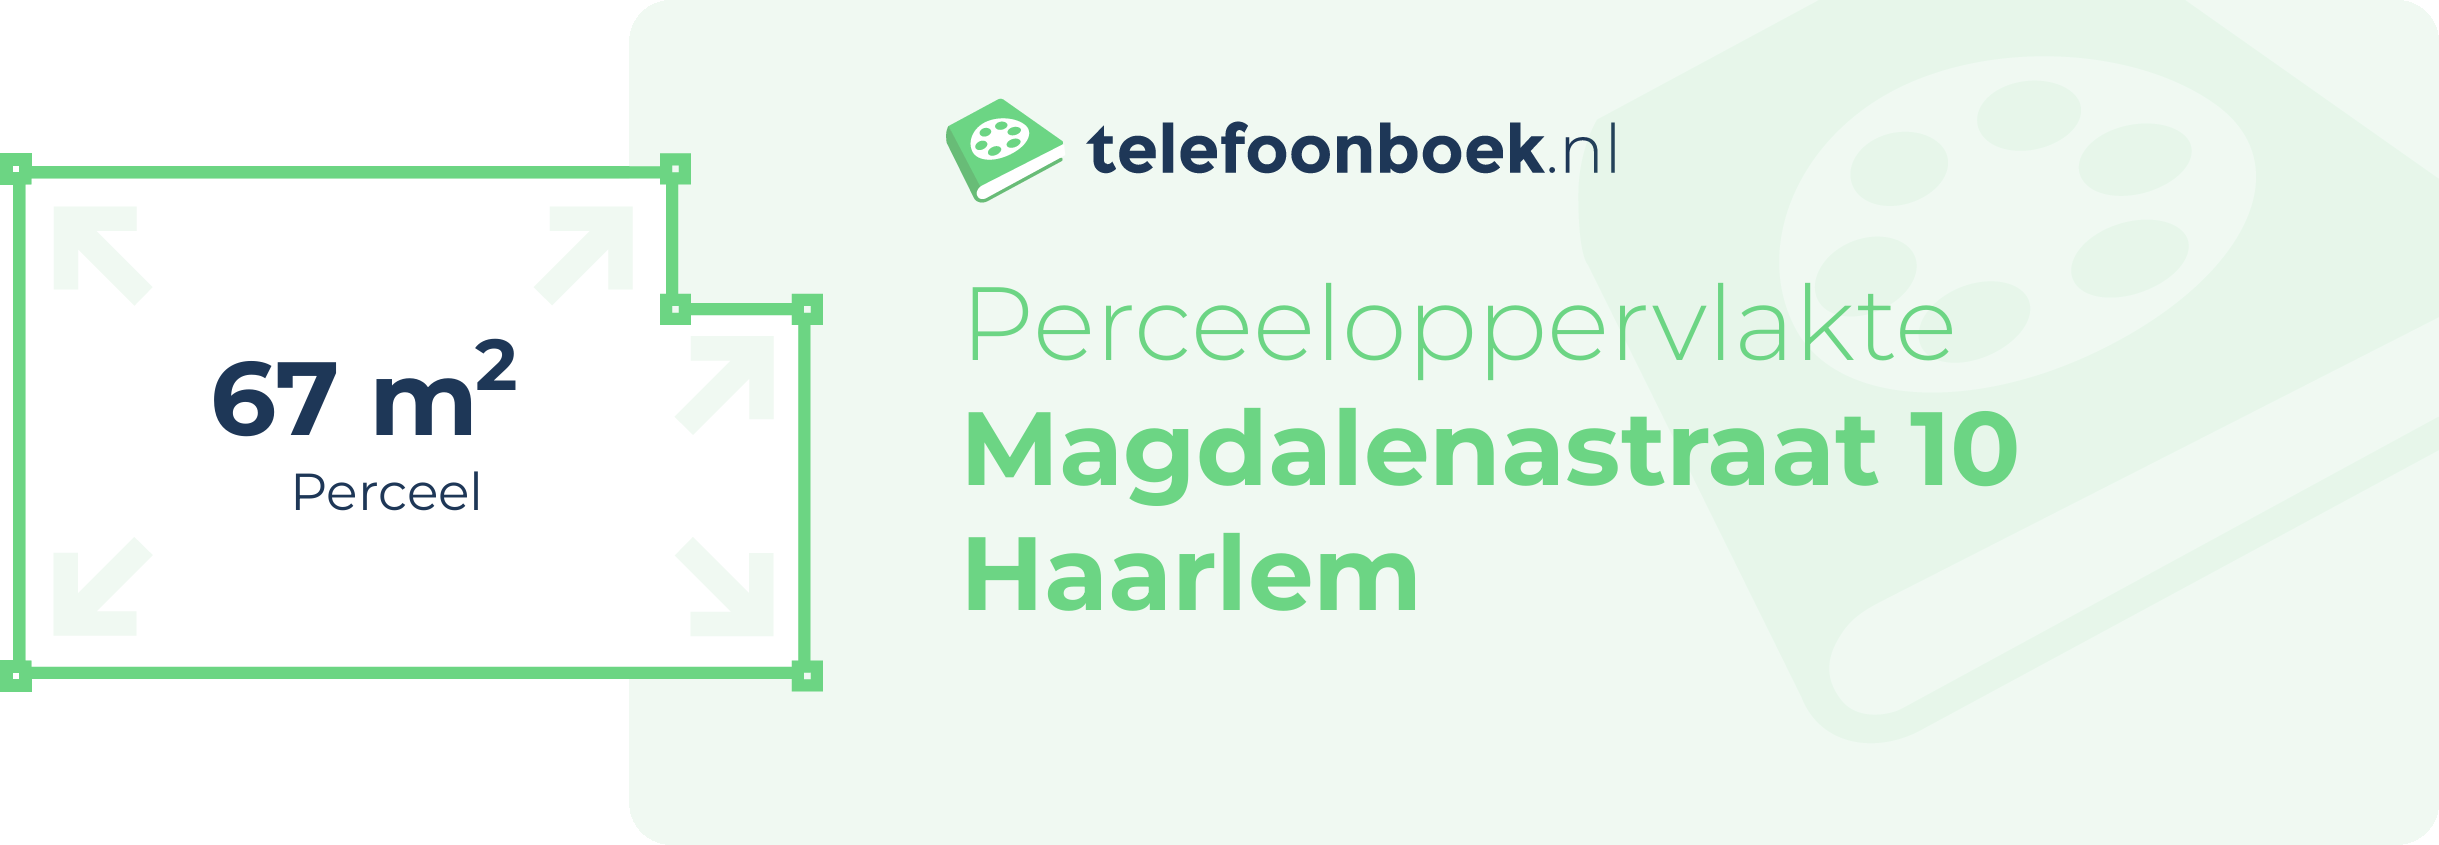 Perceeloppervlakte Magdalenastraat 10 Haarlem